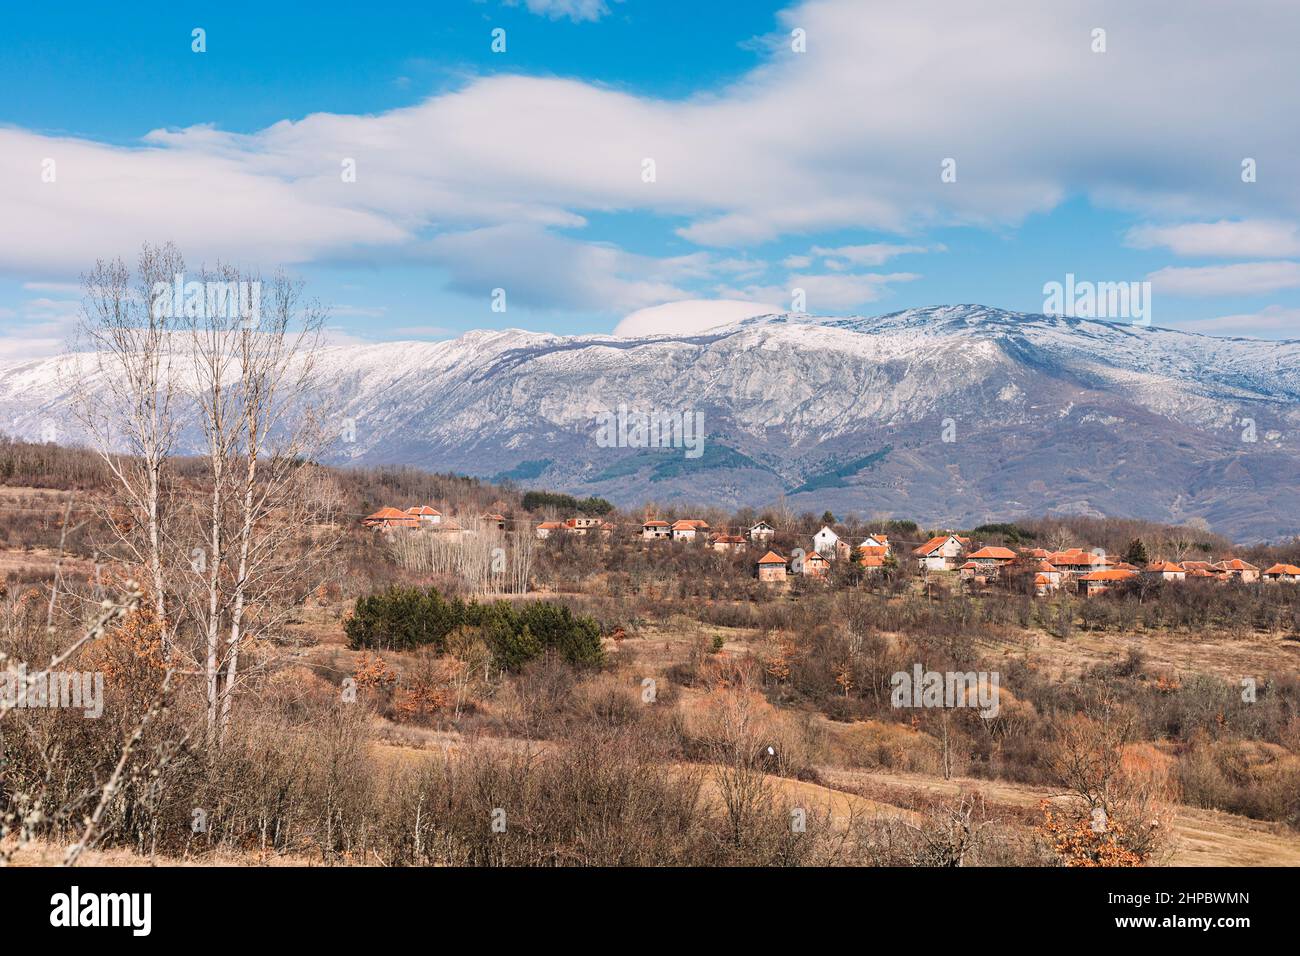 Paisaje de Montaña Seca en el este de Serbia con casas de pueblo en el valle Foto de stock